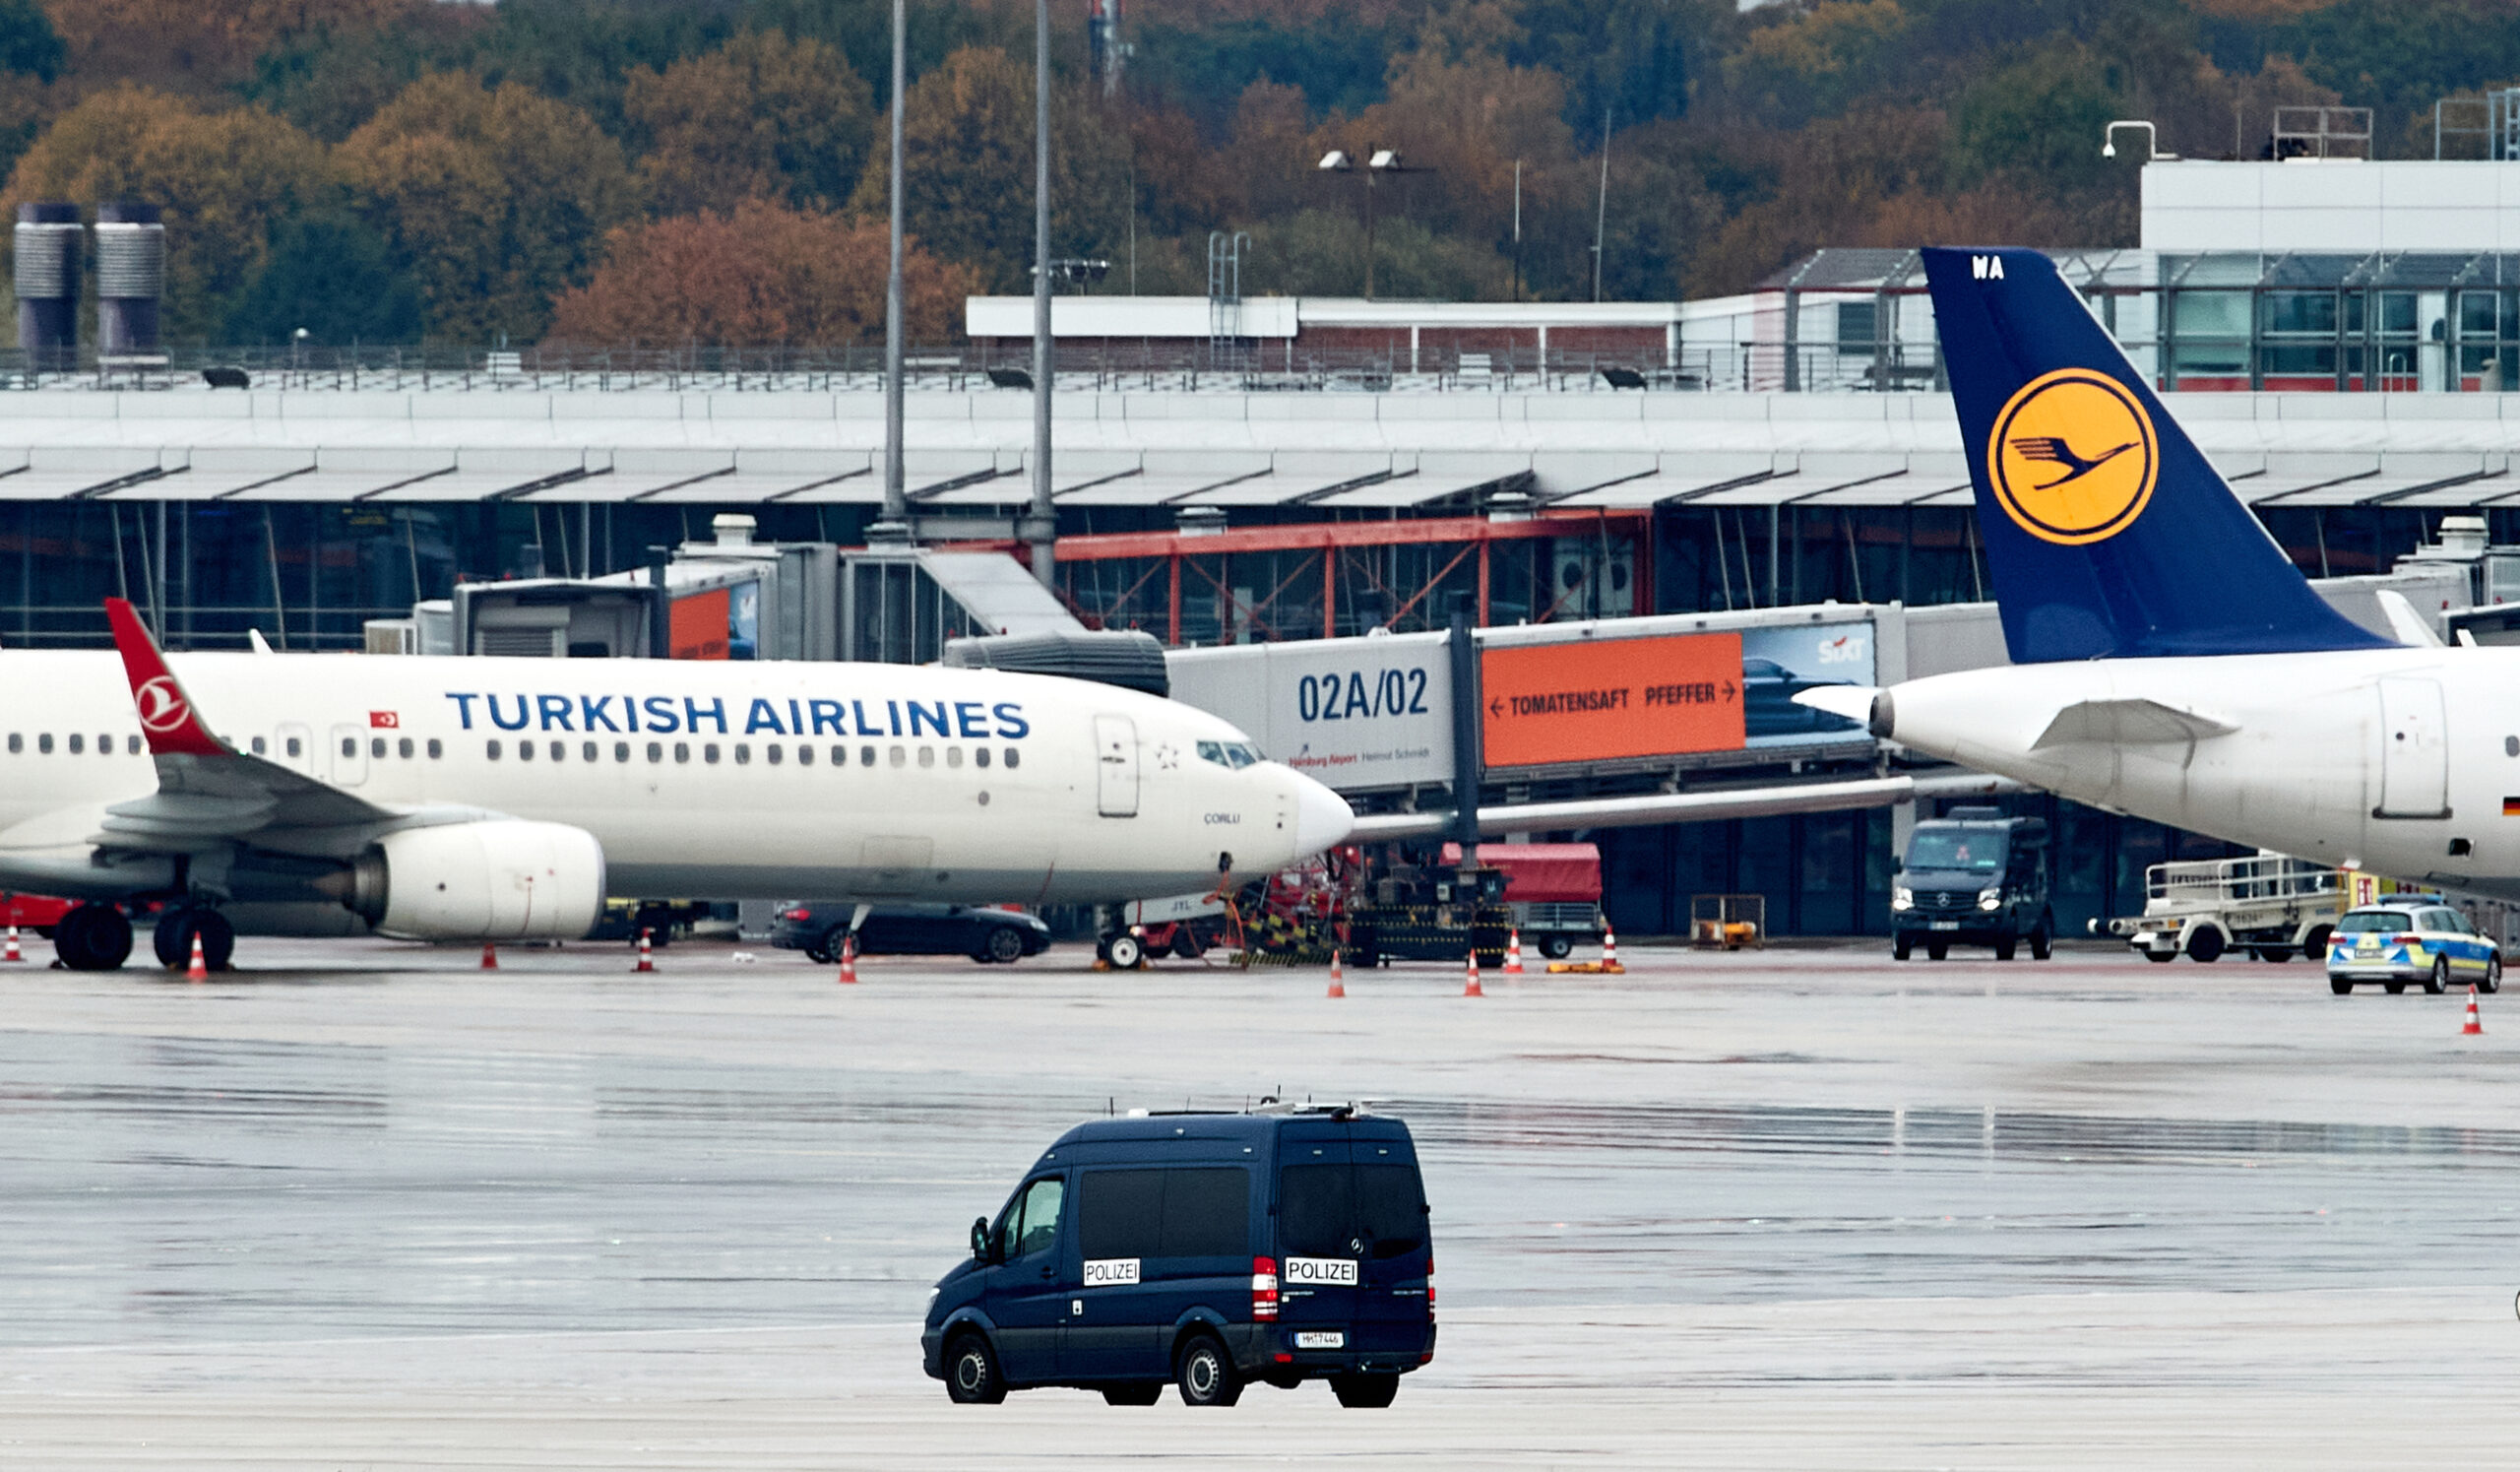 “Čula sam pucnjavu, ali niko nije znao šta se događa” Putnica iz aviona opisala talačku krizu na aerodromu u Hamburgu